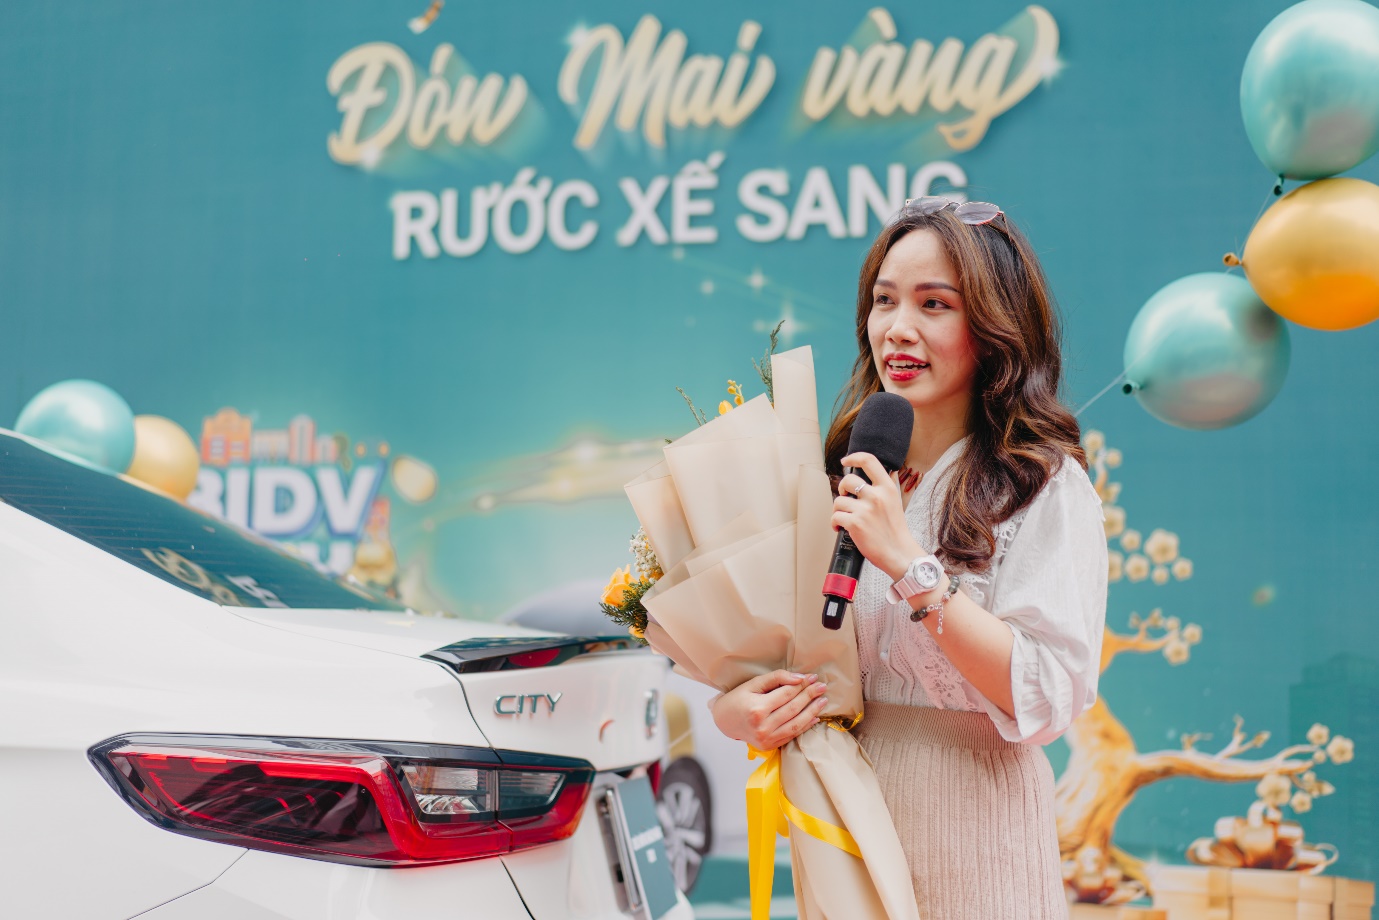 BIDV trao giải thưởng ô tô Honda City cho khách hàng - Ảnh 3.